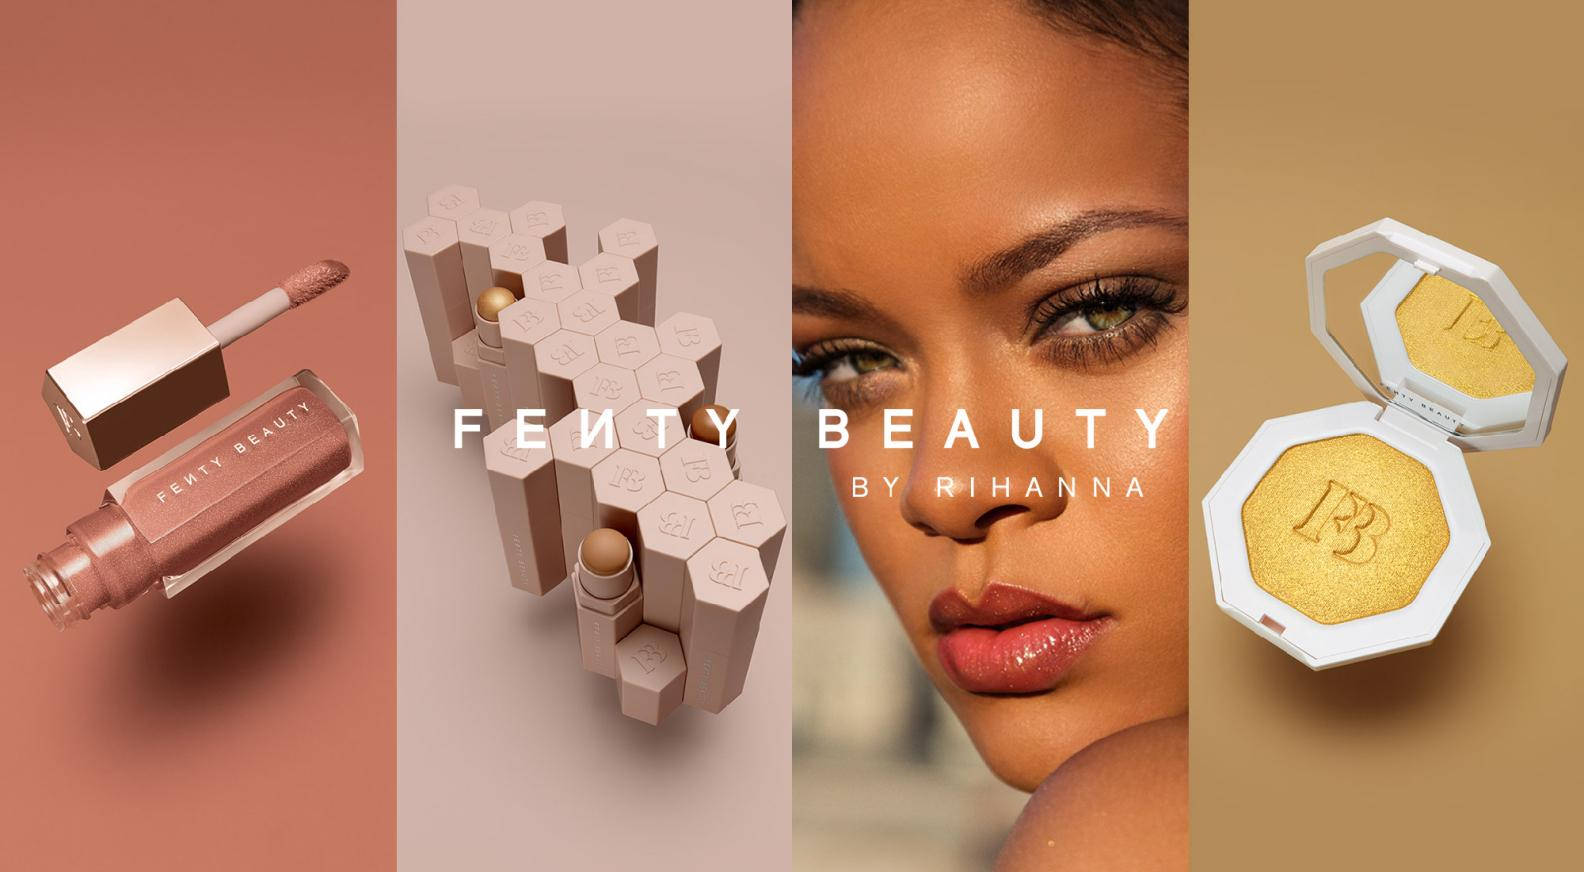 Fenty Beauty By Rihanna tilbyder et smukt og livligt baggrundsbillede. Wallpaper